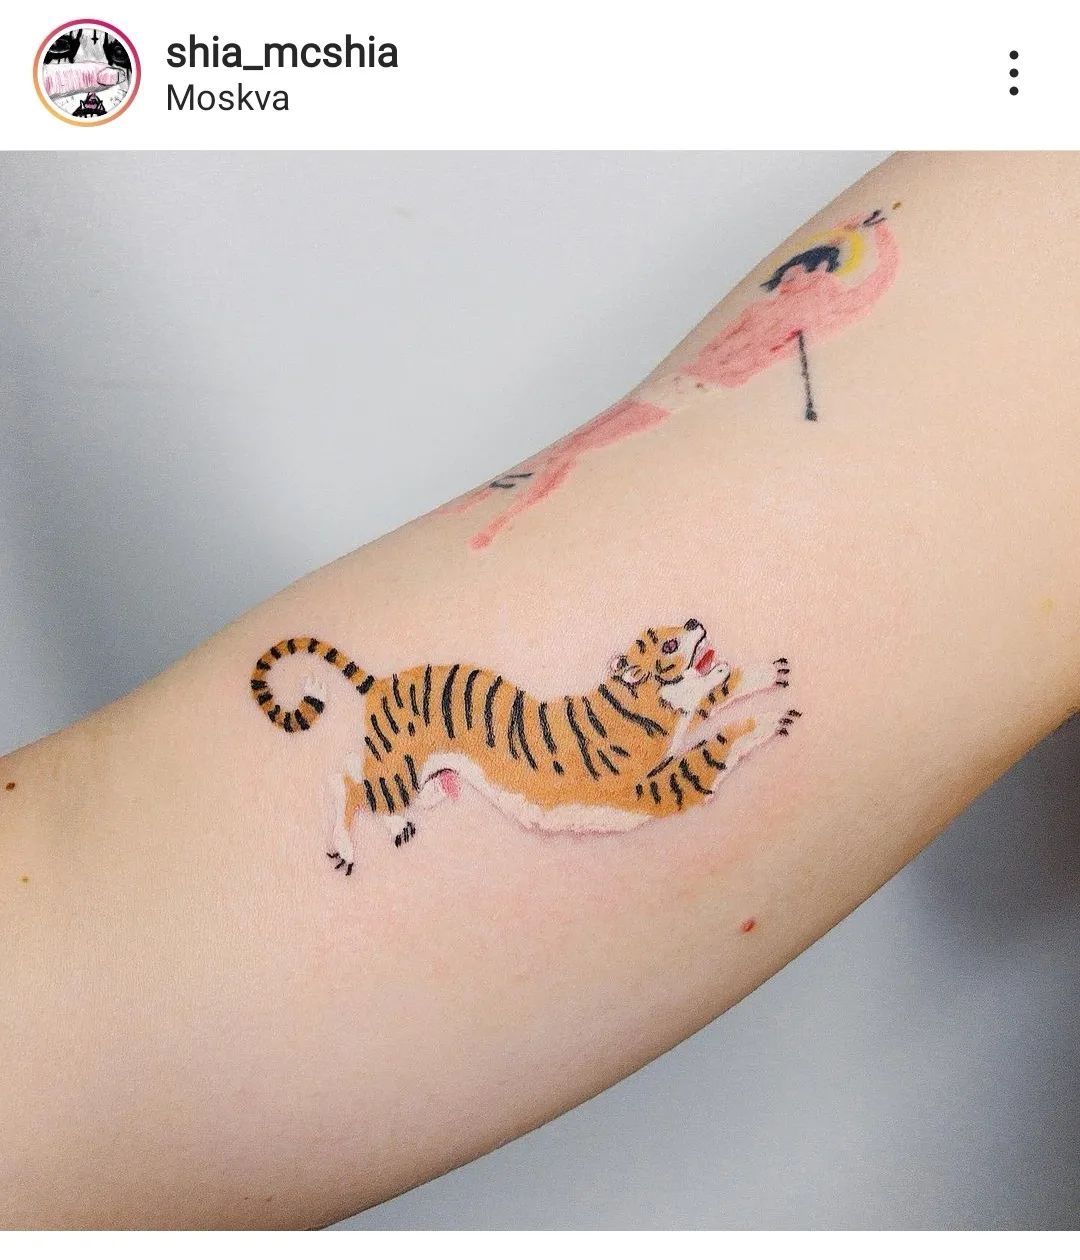 Tatuering i färg utan linjer på arm, av queer tatuerare Shia McShia.